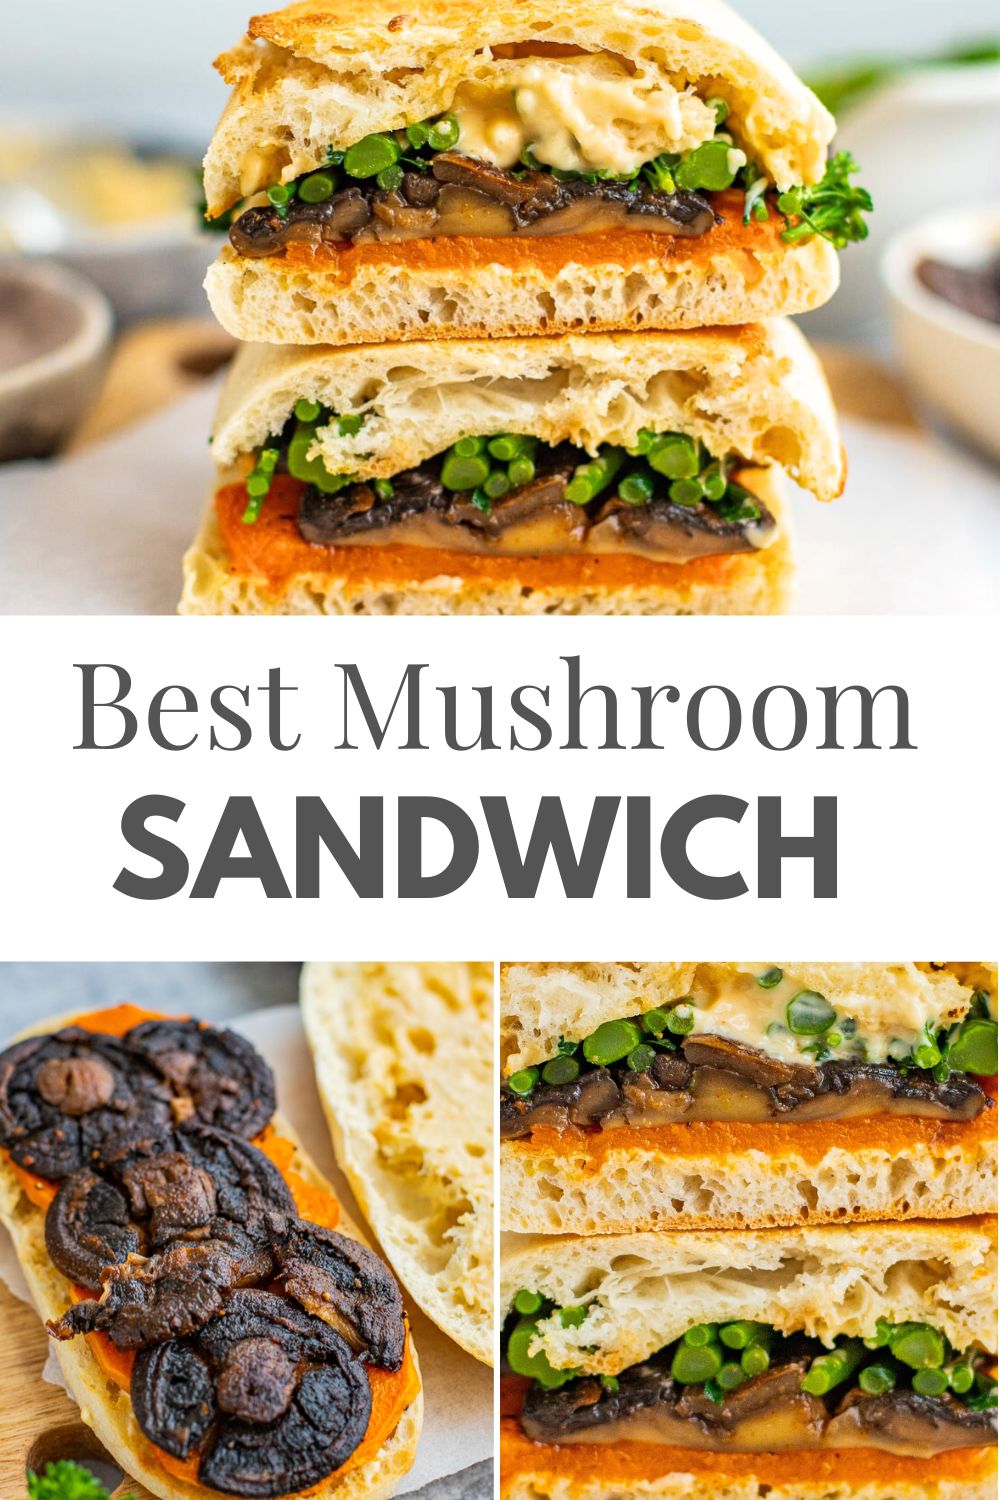 Mushroom Sandwich With Broccolini & Butternut Squash